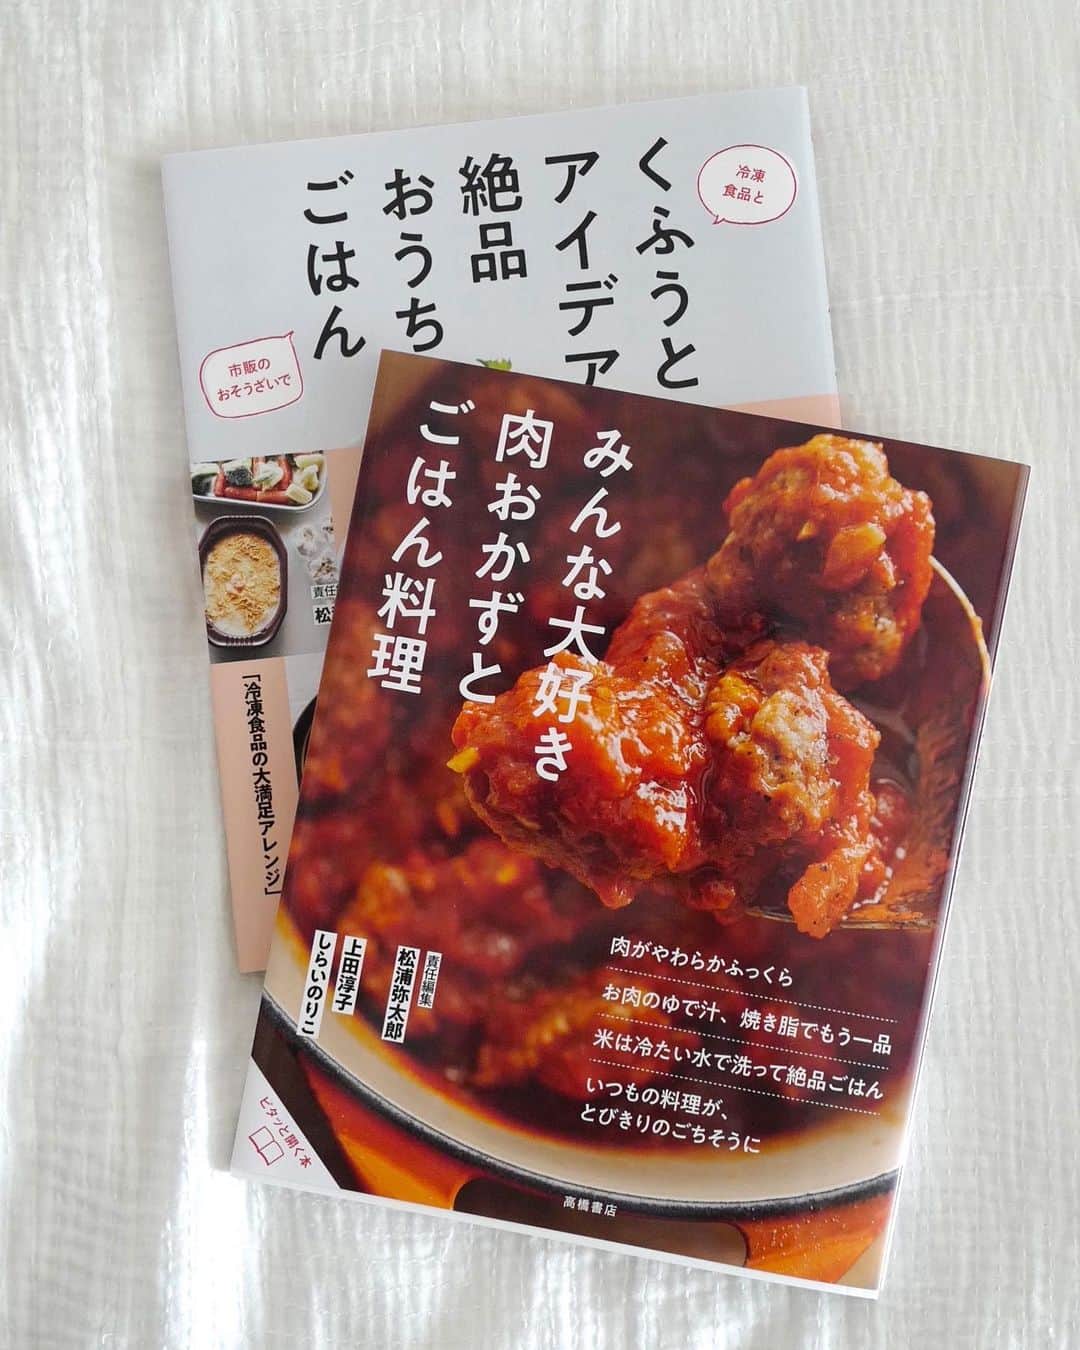 松浦弥太郎のインスタグラム：「新刊・料理本のお知らせです。本日発売。おいしいのひみつ第二弾「みんな大好き肉おかずとごはん料理」（高橋書店）。いつものお肉料理をもっとおいしくするコツとレシピを上田淳子先生に。それだけでごちそうになるごはん料理をしらいのりこ先生に教えていただきました。責任編集松浦弥太郎です。やっぱりお肉とごはんが好き。おいしく食べて元気になろうを合言葉に心を込めて作りました。僕も「わが家のごはん料理」でレシピを載せました。みなさん、ぜひ手にとってご覧ください。第一弾「くふうとアイデア絶品おうちごはん」もよろしくお願いします。いつもありがとうございます。#松浦弥太郎 #おいしいのひみつ #高橋書店 #料理本 #上田淳子 #しらいのりこ #ごはん同盟 #みなさんの役に立ちますように」